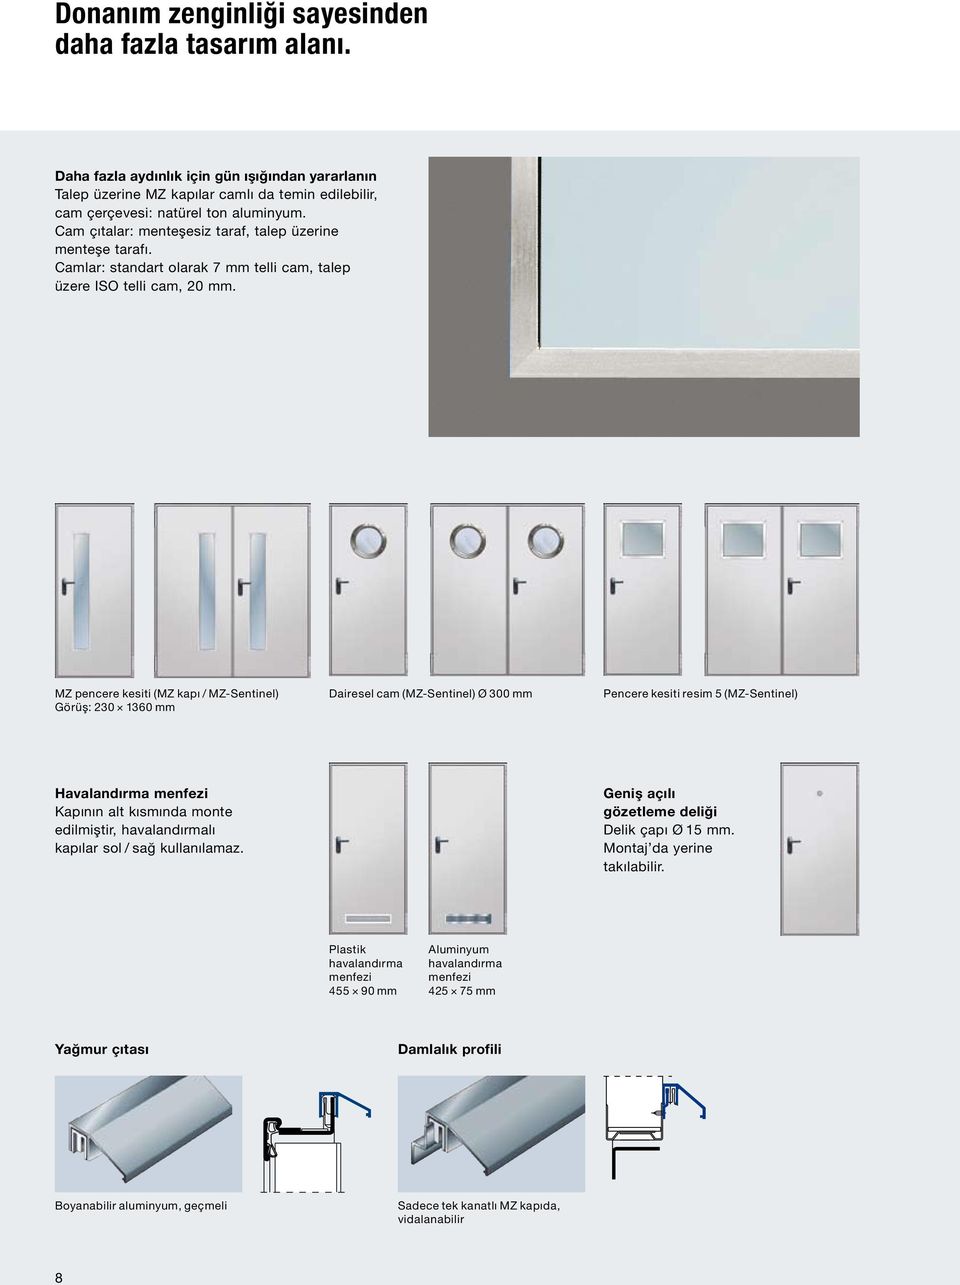 MZ pencere kesiti (MZ kapı / MZ-Sentinel) Görüş: 230 1360 mm Dairesel cam (MZ-Sentinel) Ø 300 mm Pencere kesiti resim 5 (MZ-Sentinel) Havalandırma menfezi Kapının alt kısmında monte edilmiştir,